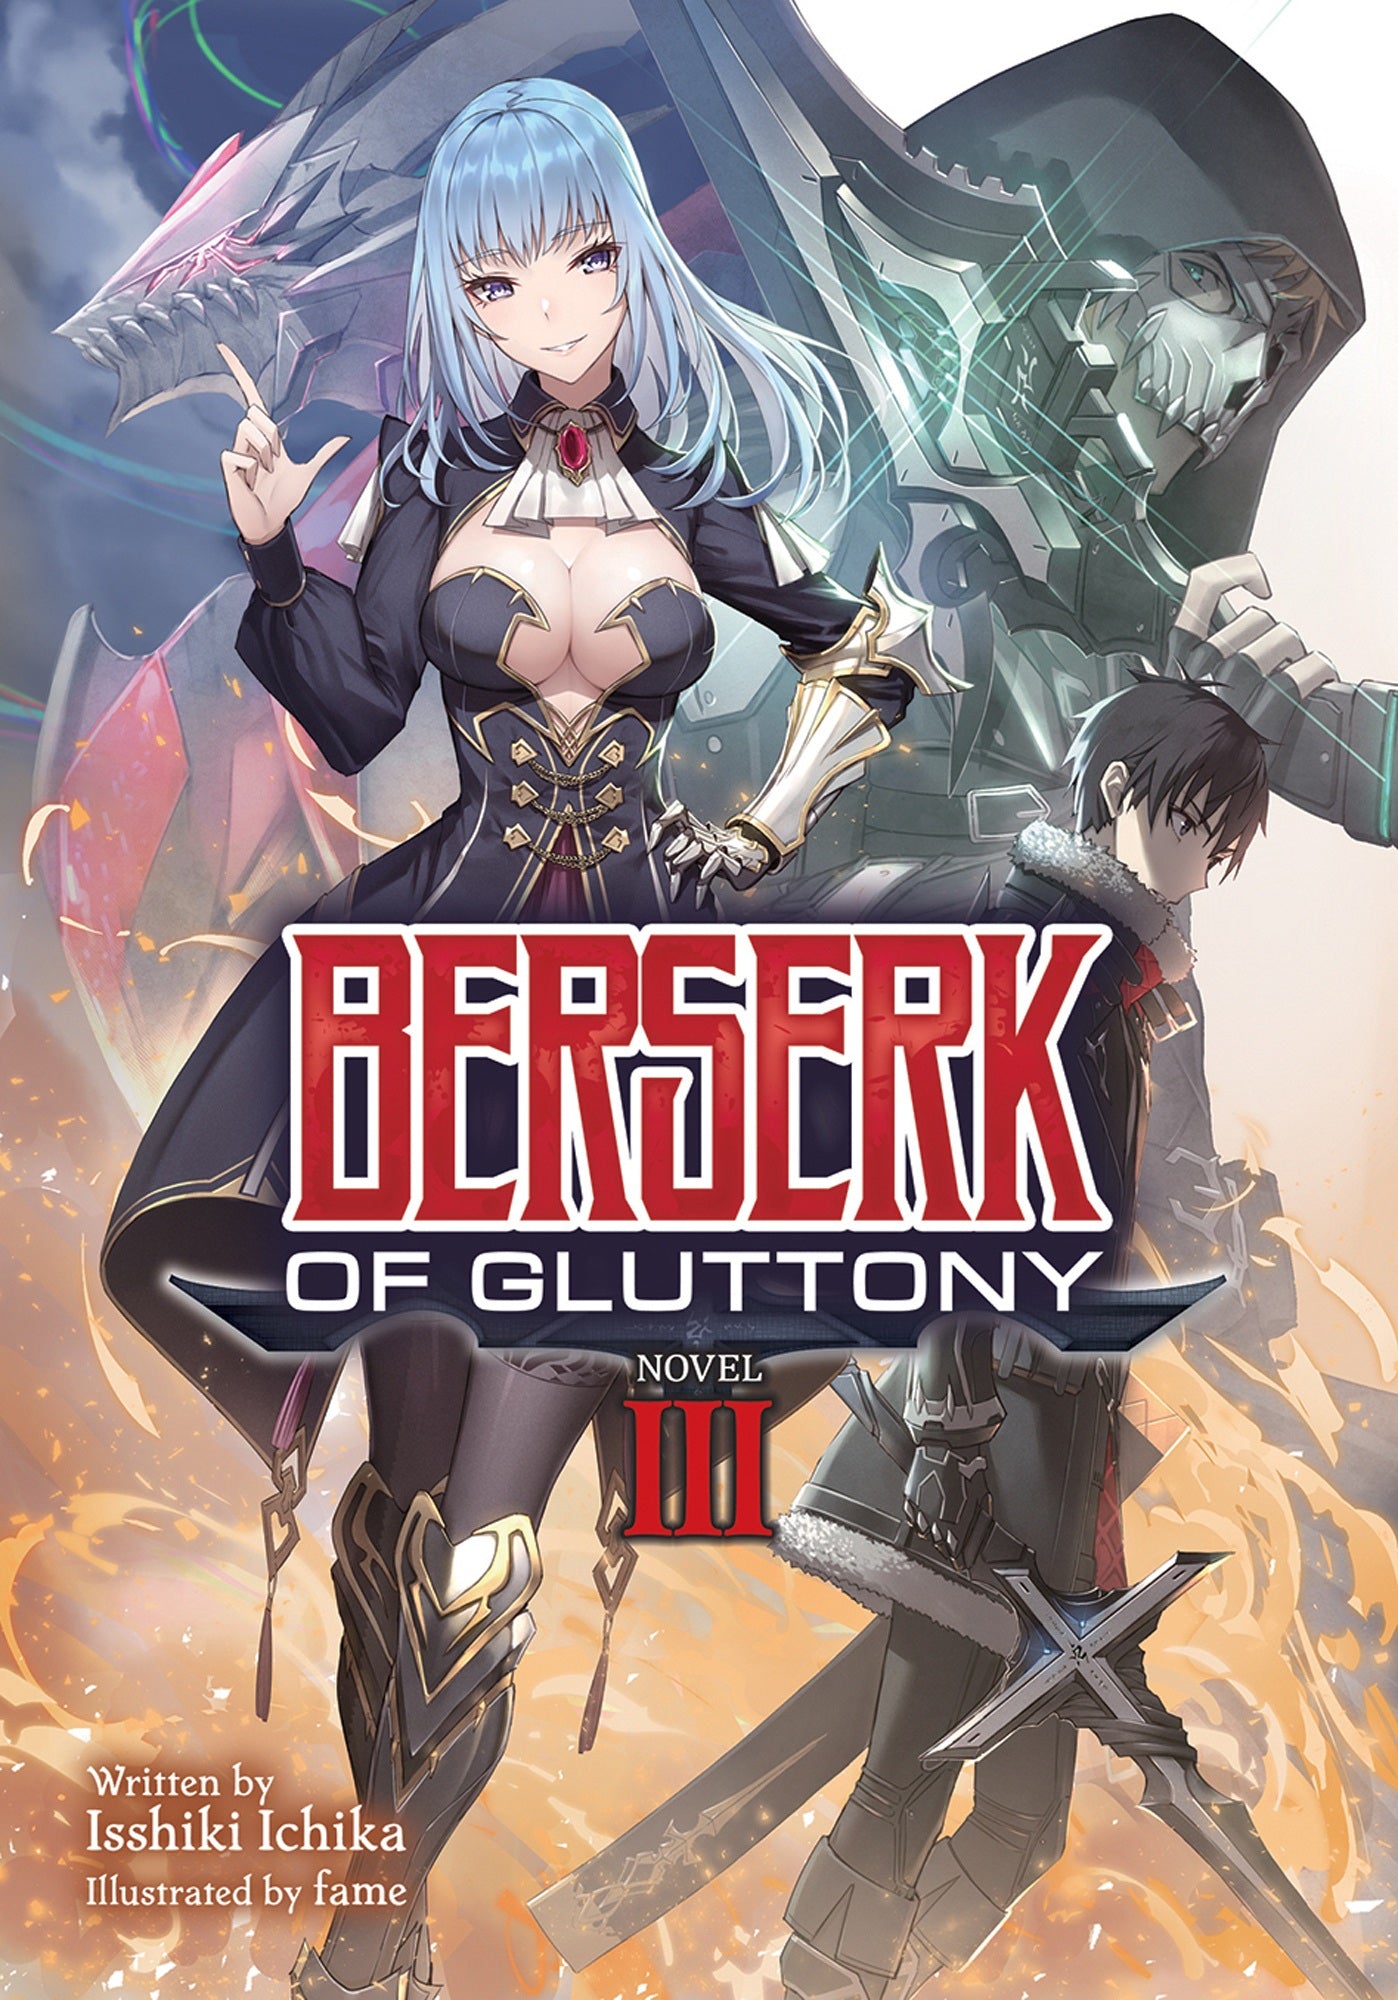 Berserk of Gluttony (Light Novel) Vol. 03